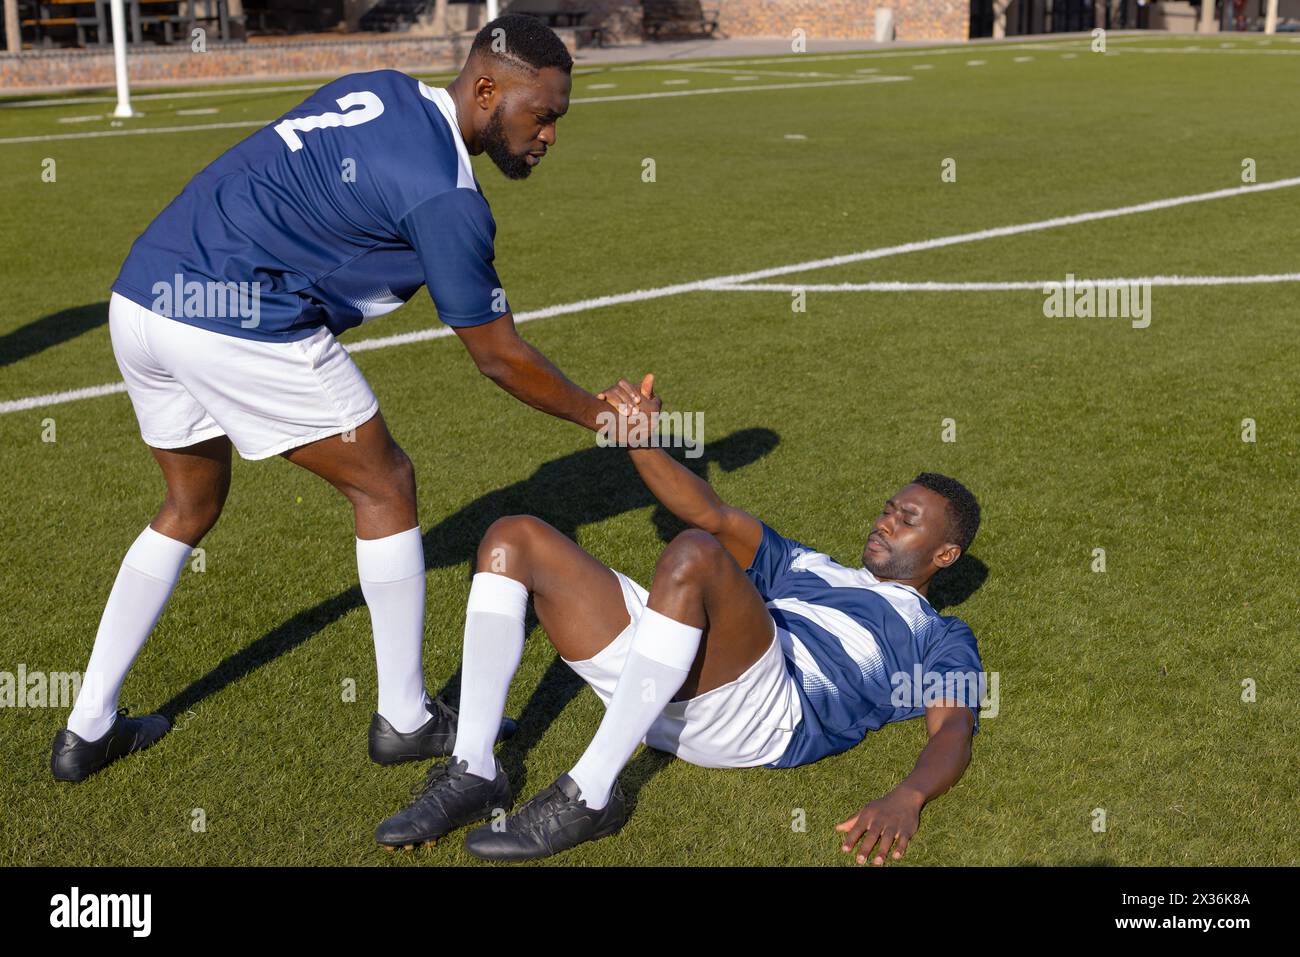 Deux athlètes afro-américains jouent au rugby, l'un aidant l'autre Banque D'Images